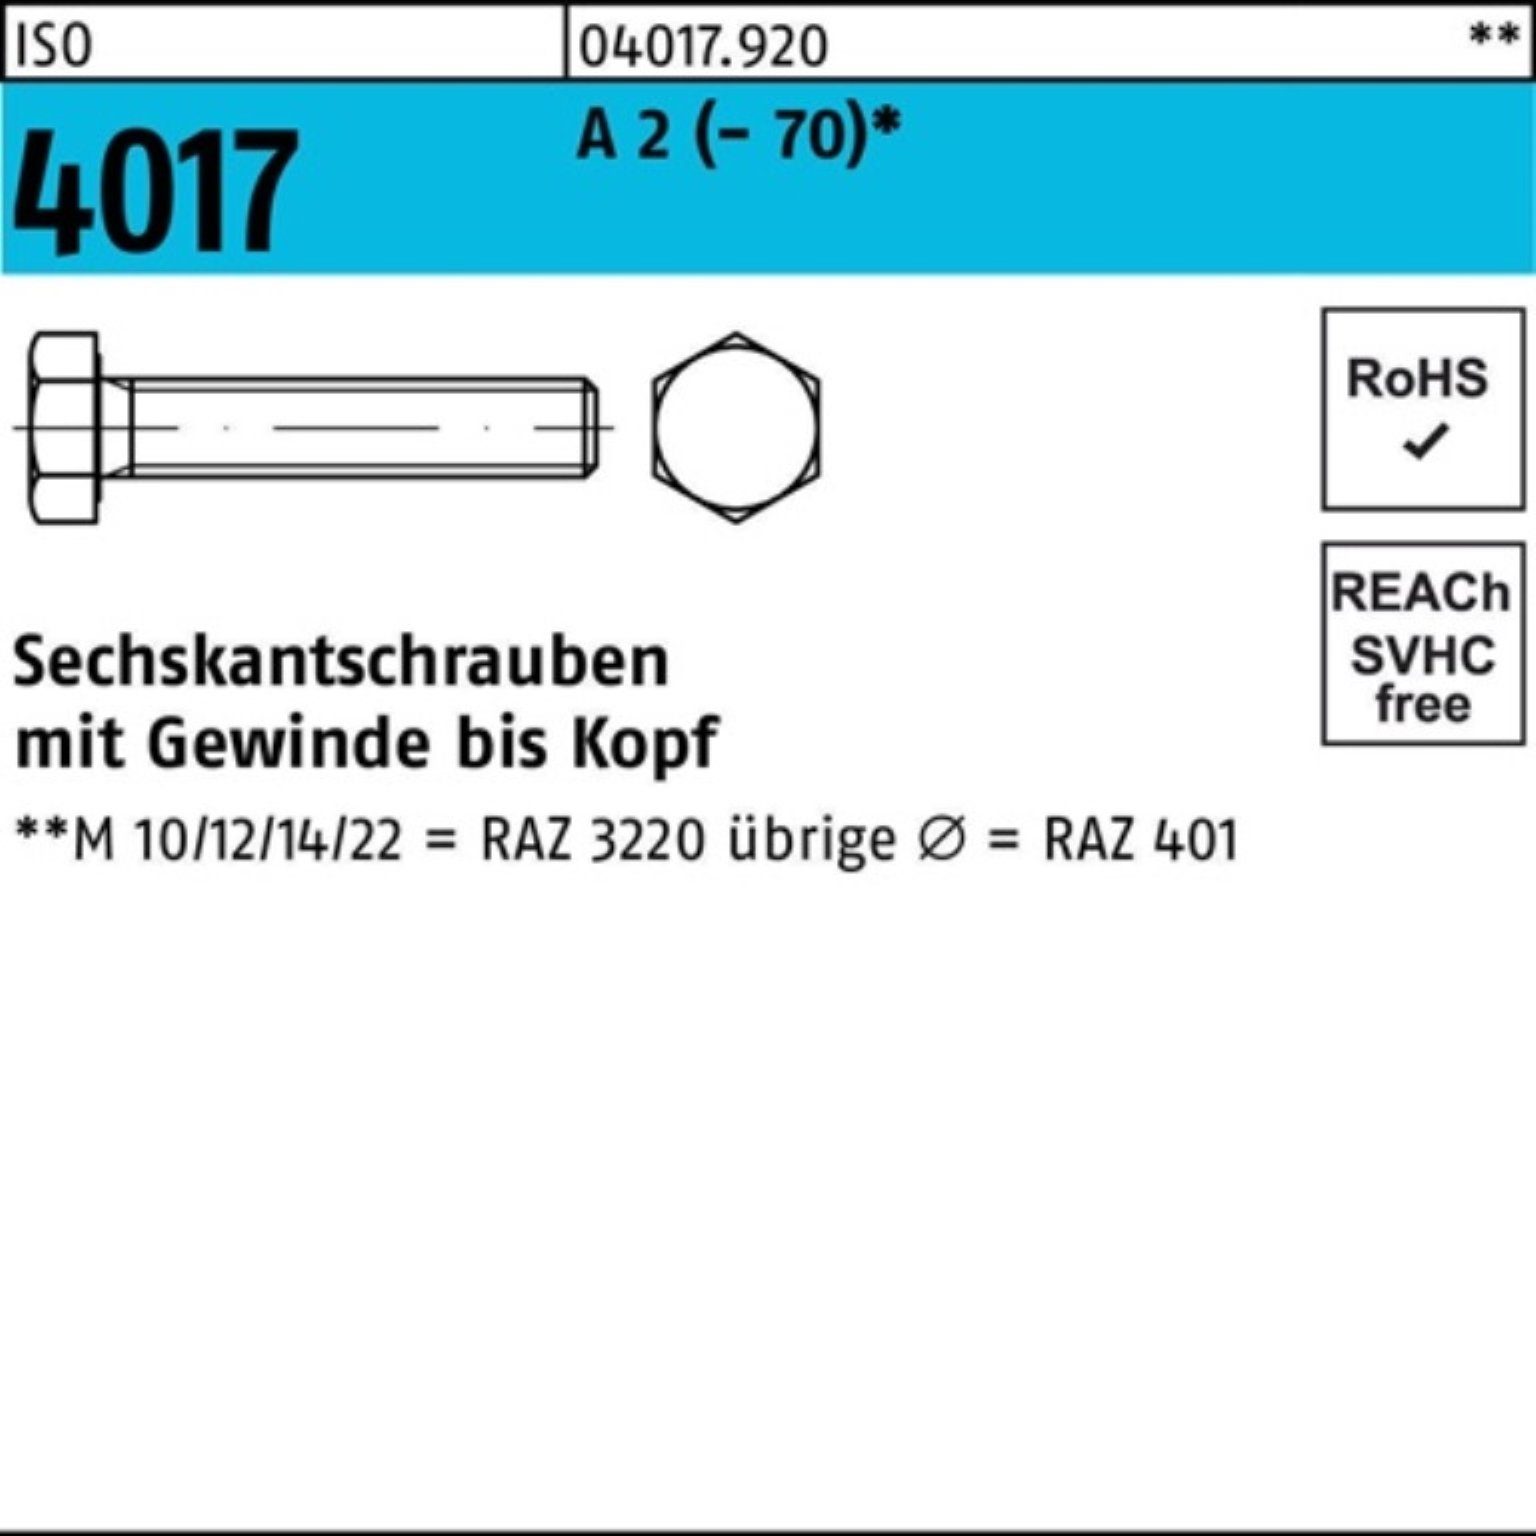 Bufab Sechskantschraube 100er M6x Sechskantschraube 100 VG 2 4017 ISO Pack Stück A (70) 65